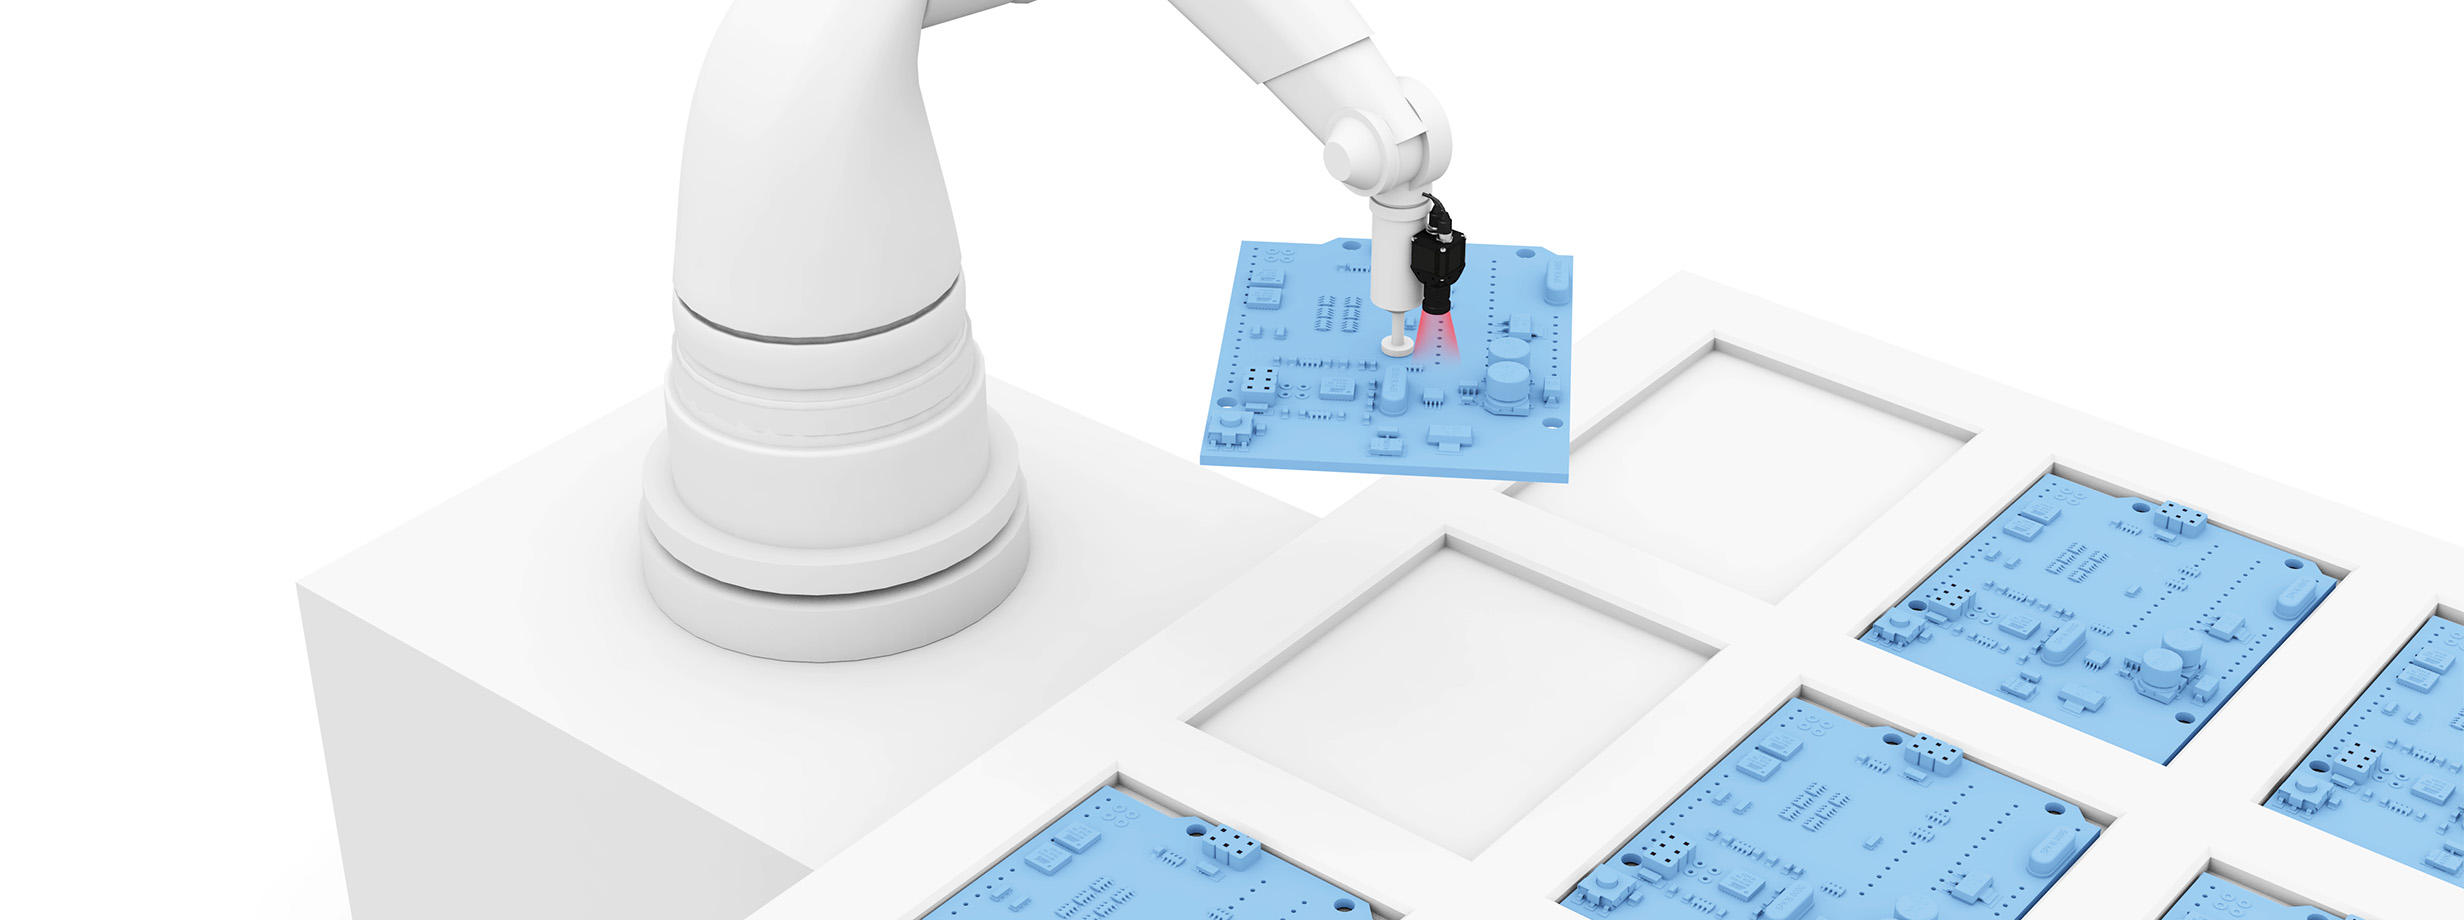 Precyzyjne sterowanie robotem w aplikacjach typu "Pick and Place". image